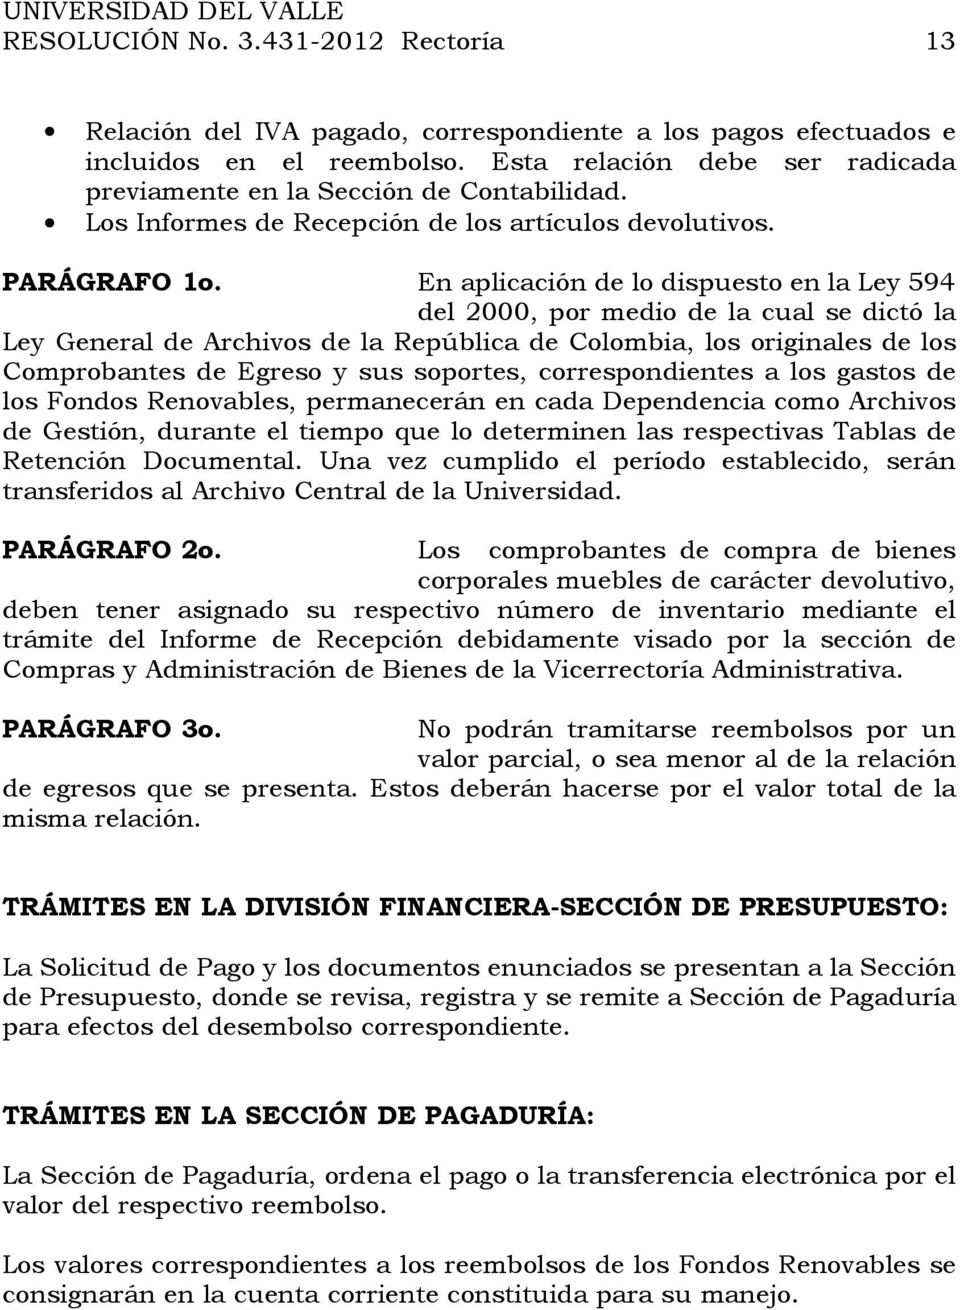 En aplicación de lo dispuesto en la Ley 594 del 2000, por medio de la cual se dictó la Ley General de Archivos de la República de Colombia, los originales de los Comprobantes de Egreso y sus